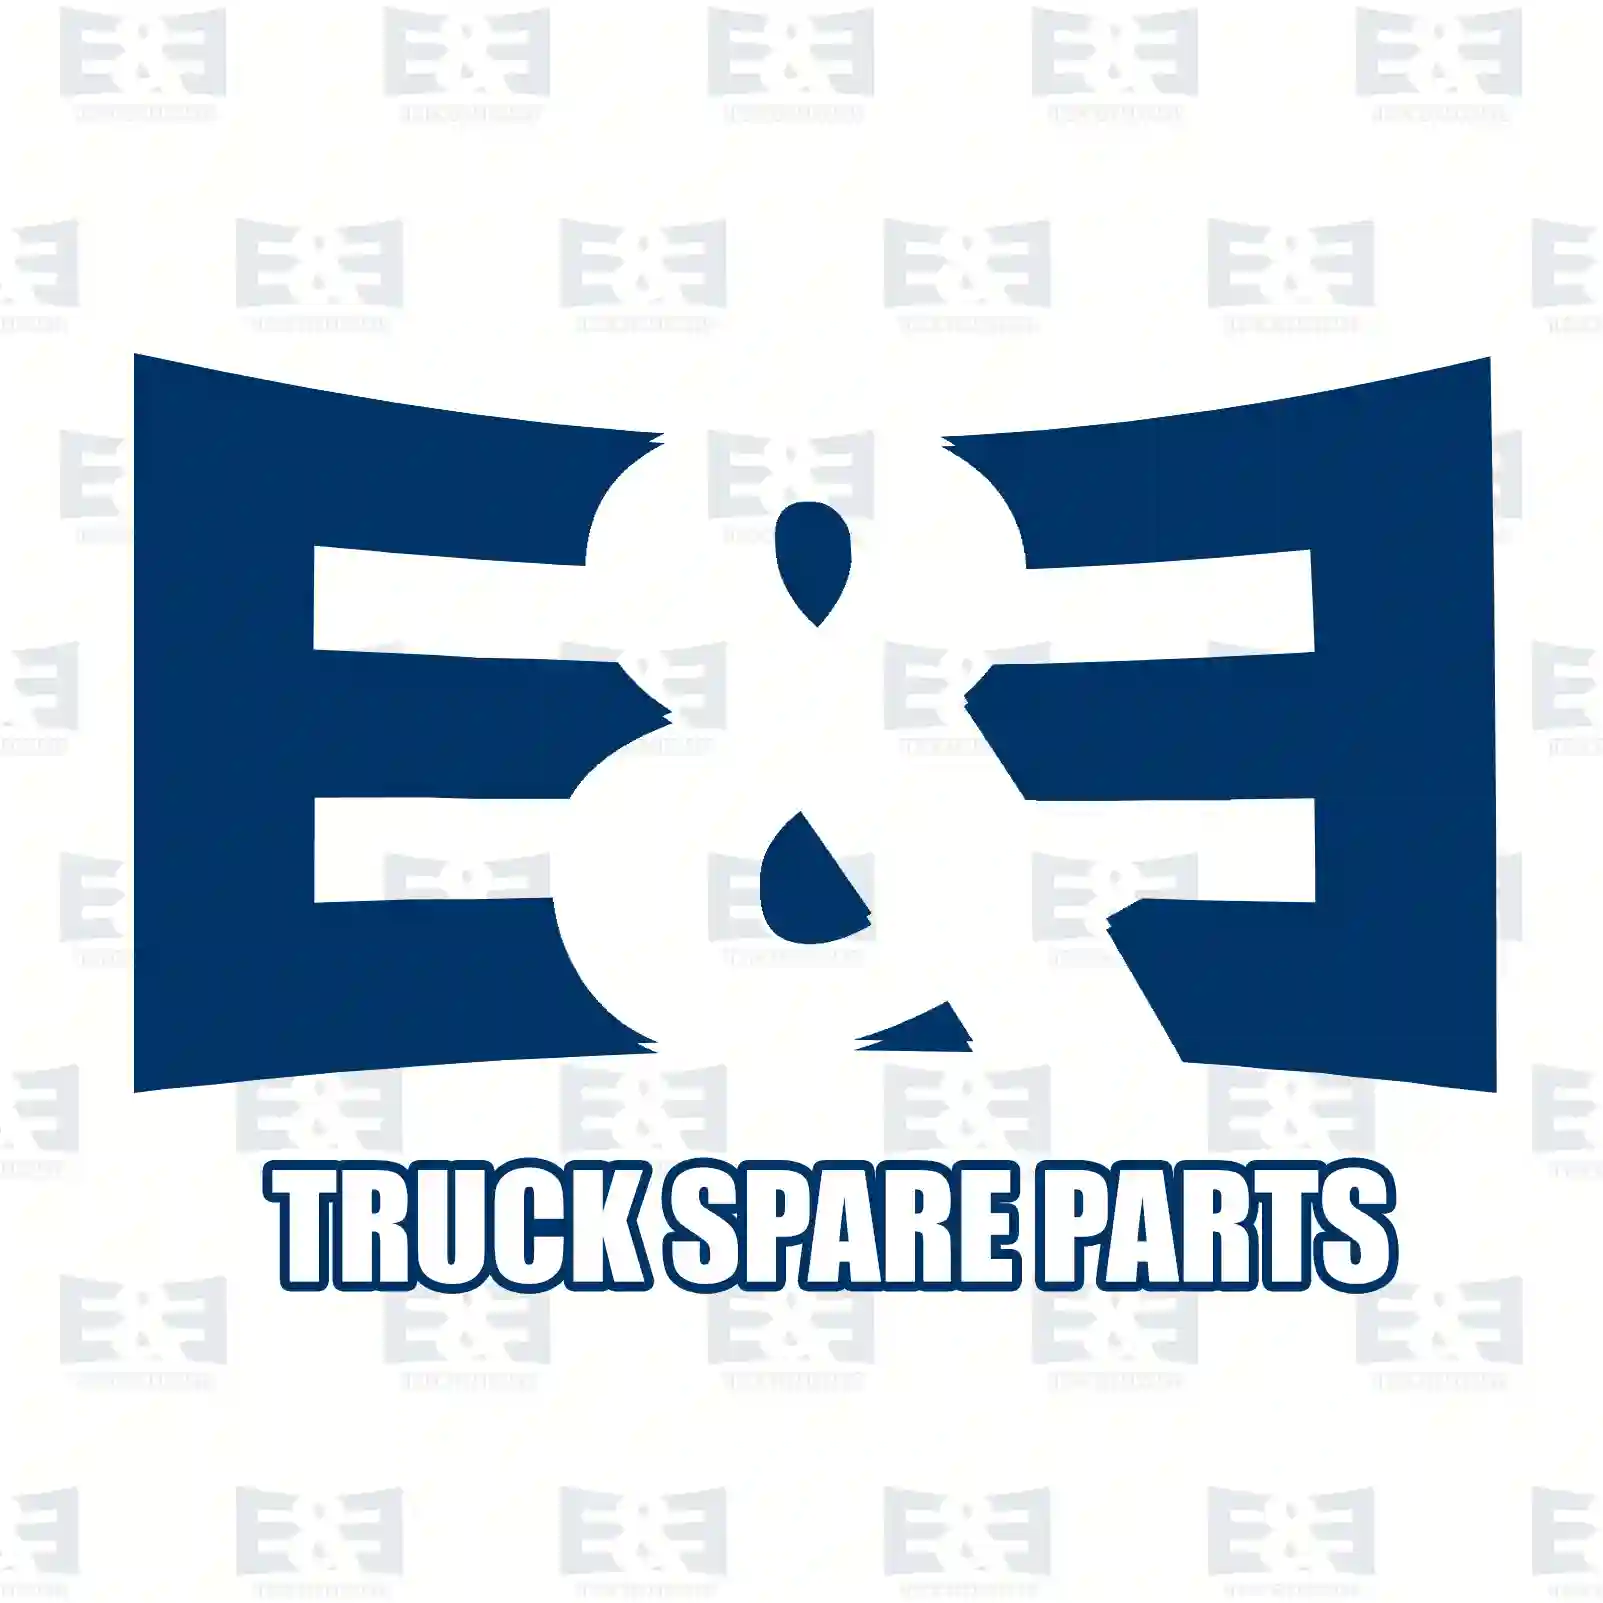 Belt tensioner, 2E2203747, 1125419, 1201181, X57E-6A228-CB, X57E-6A228-CC ||  2E2203747 E&E Truck Spare Parts | Truck Spare Parts, Auotomotive Spare Parts Belt tensioner, 2E2203747, 1125419, 1201181, X57E-6A228-CB, X57E-6A228-CC ||  2E2203747 E&E Truck Spare Parts | Truck Spare Parts, Auotomotive Spare Parts